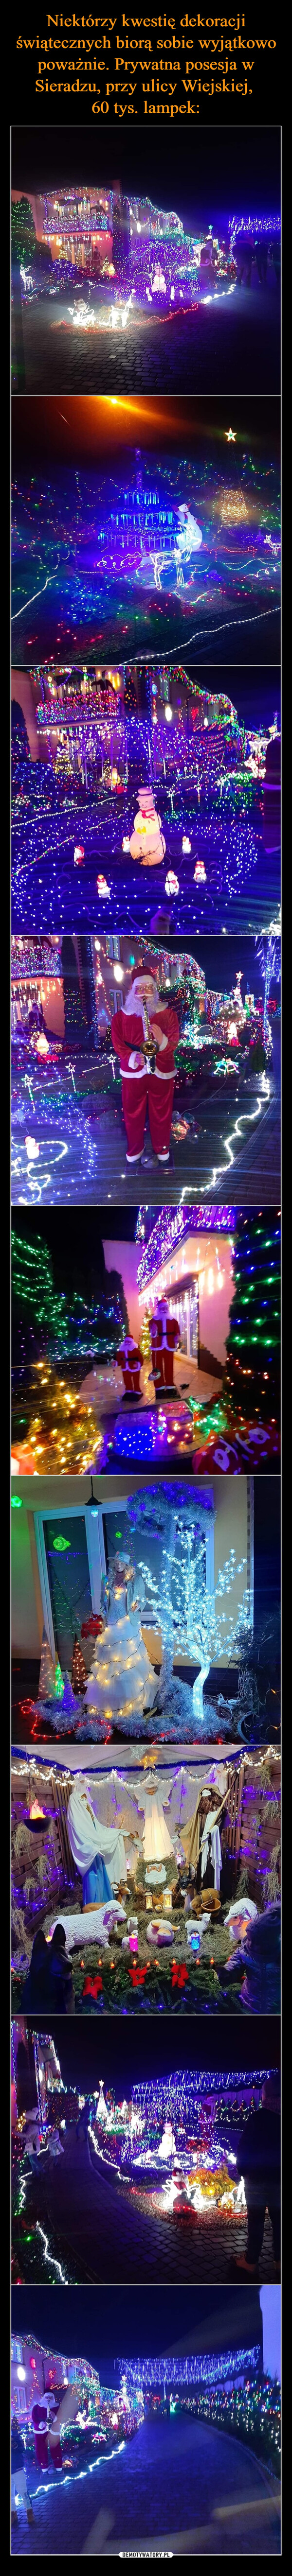 Niektórzy kwestię dekoracji świątecznych biorą sobie wyjątkowo poważnie. Prywatna posesja w Sieradzu, przy ulicy Wiejskiej, 
60 tys. lampek: